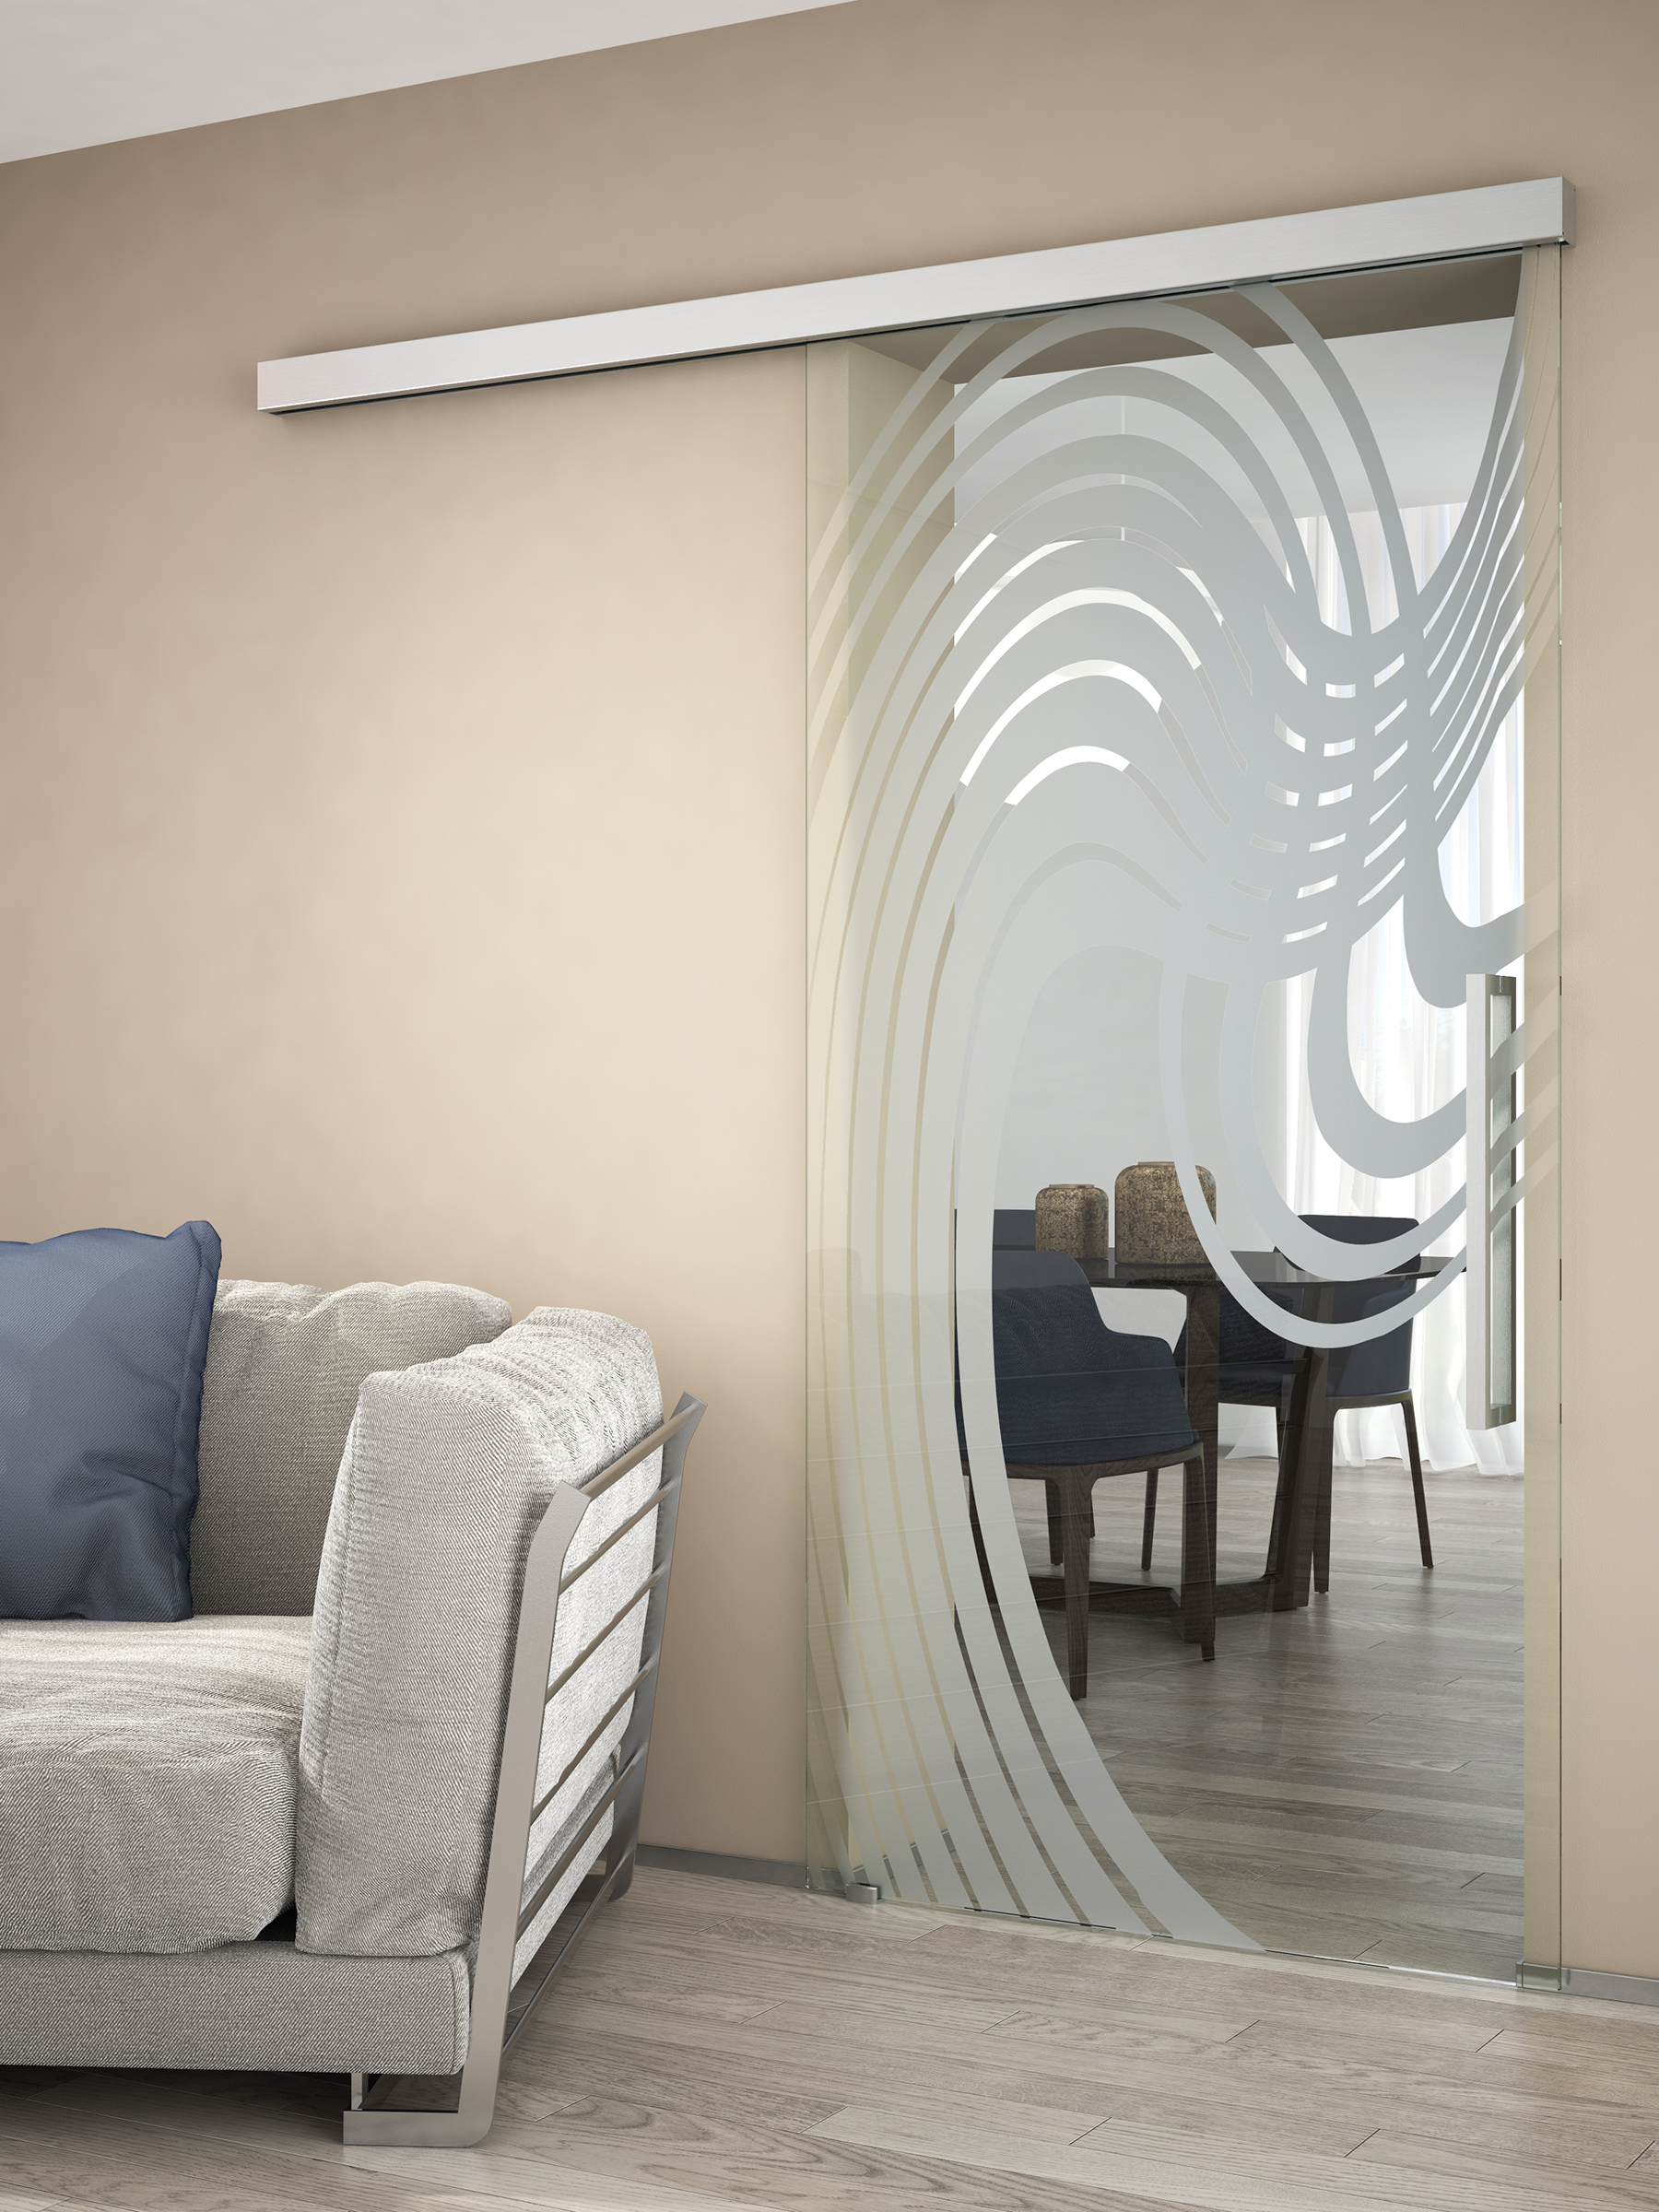 TRIX ZERO posúva jednokrídlové celosklenené dvere s pieskovaným motívom.